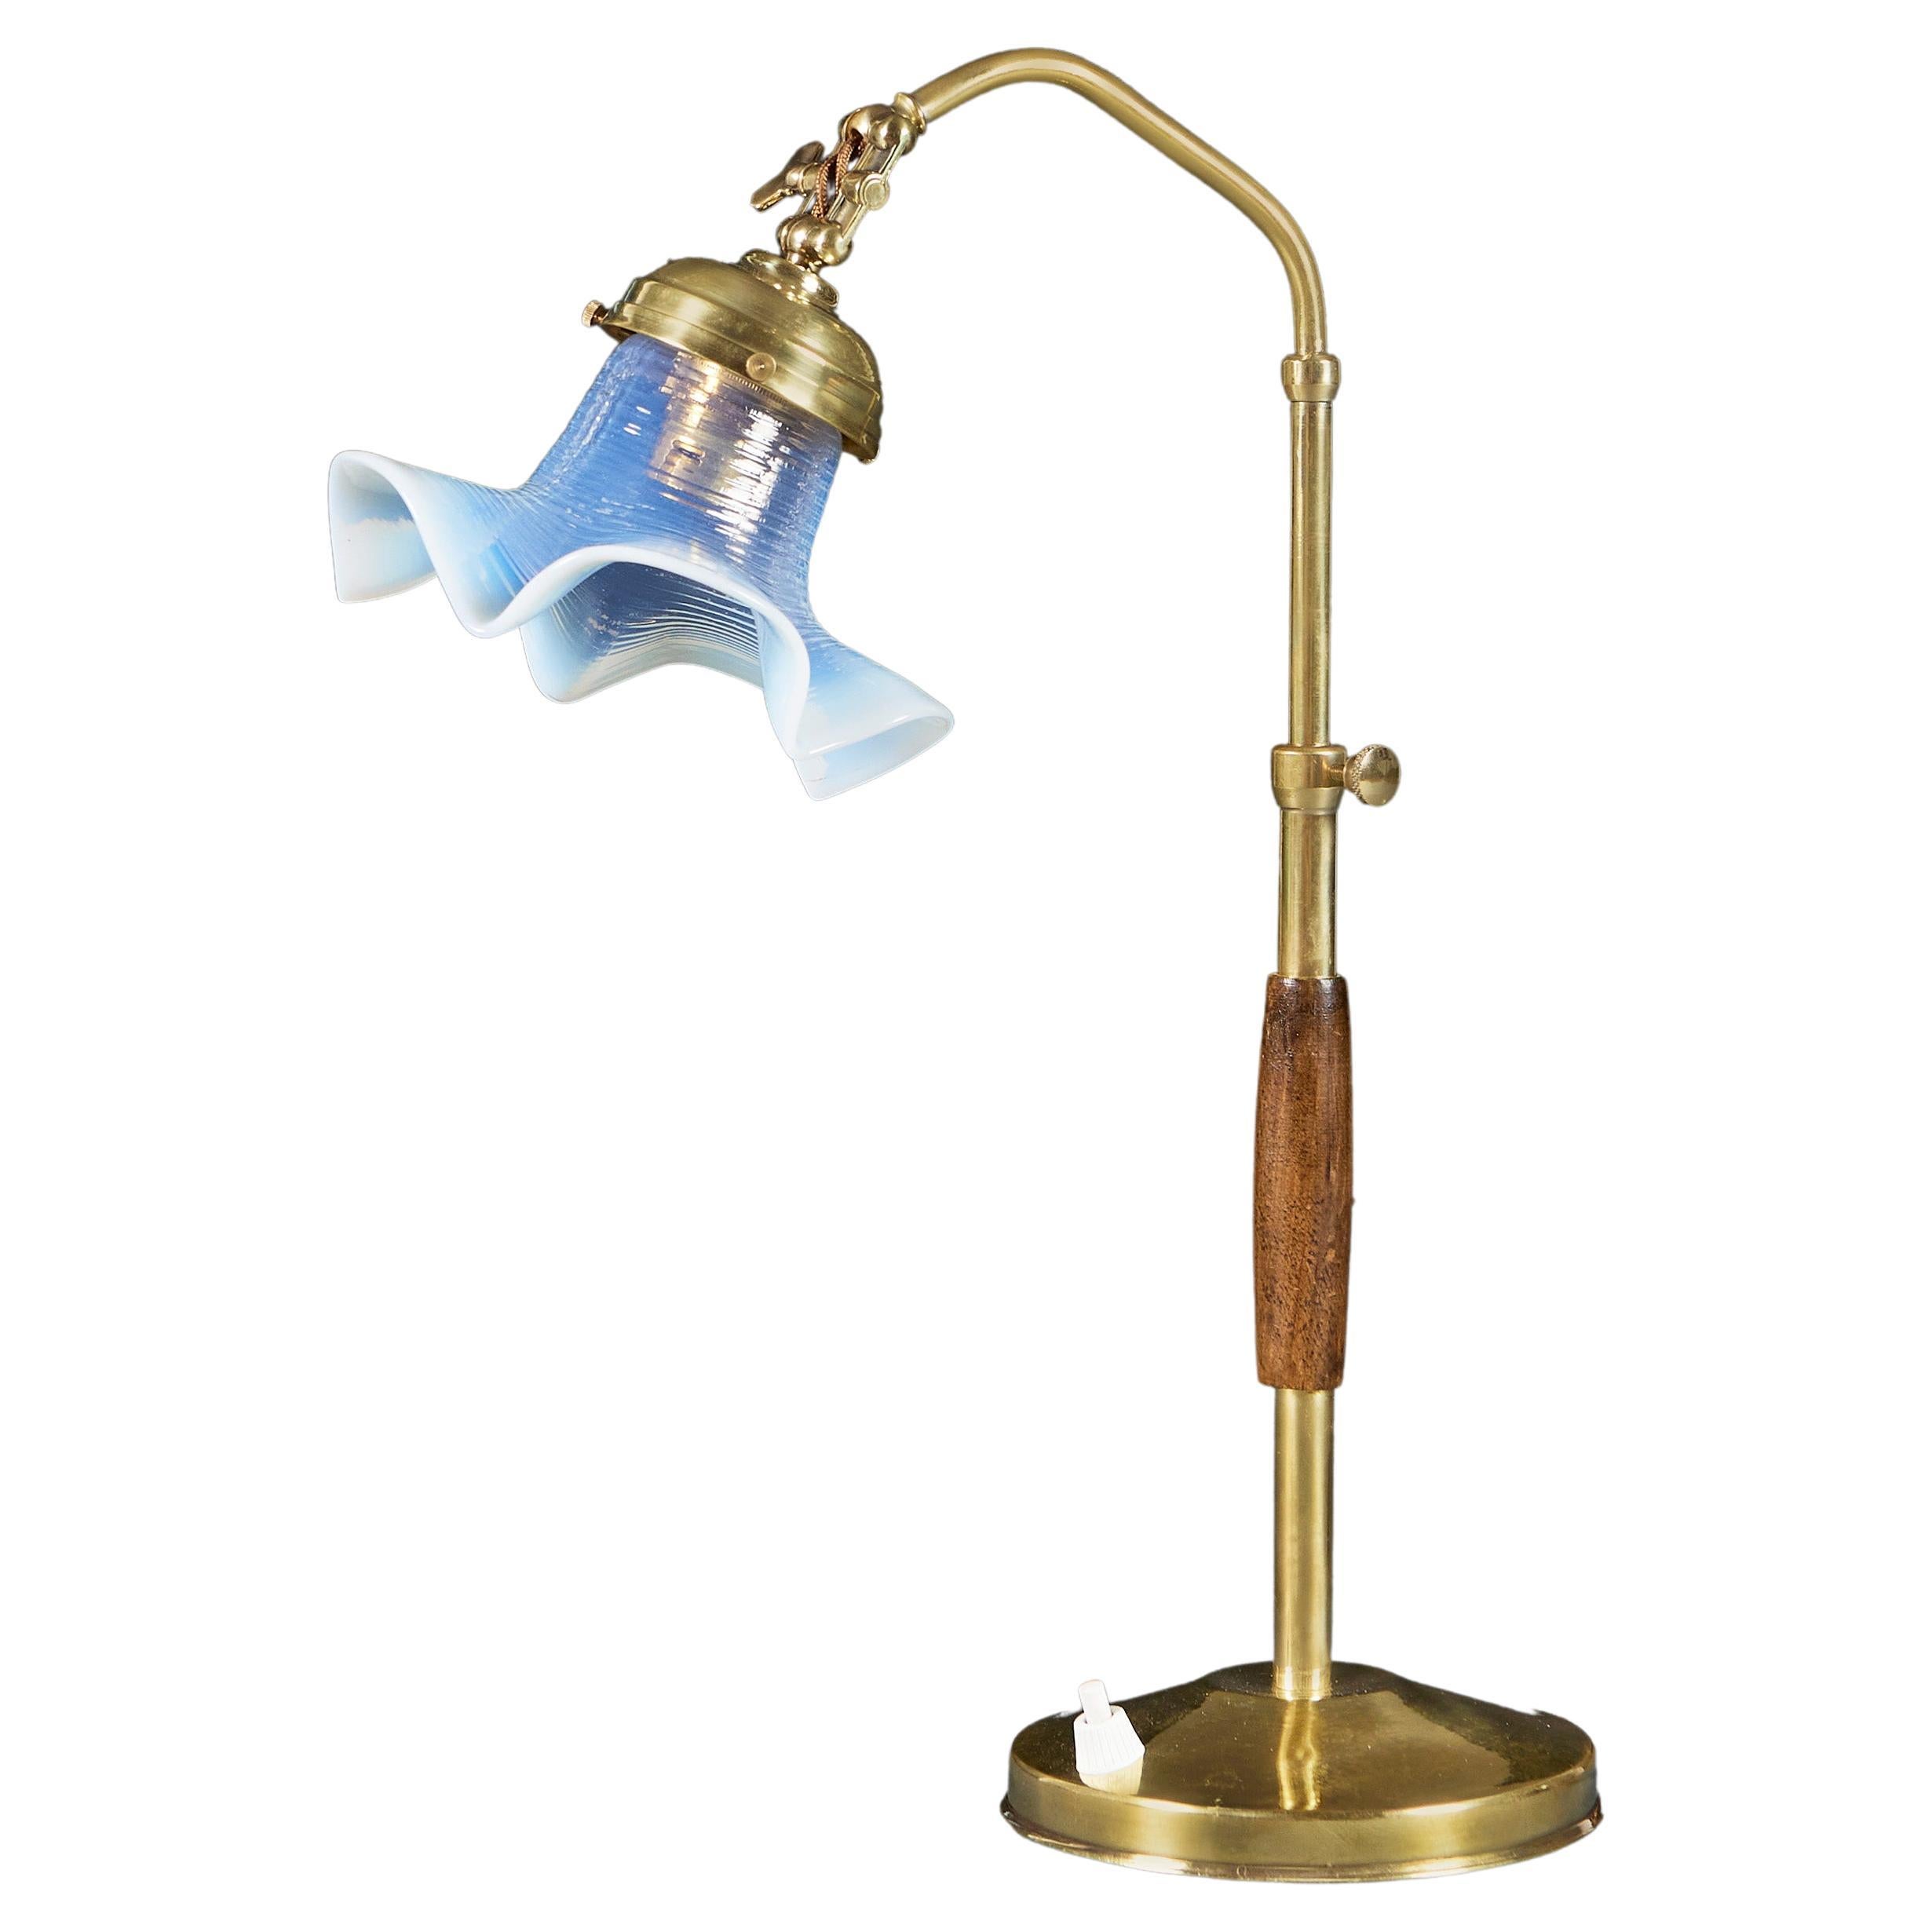 An Art Nouveau Desk Lamp For Sale